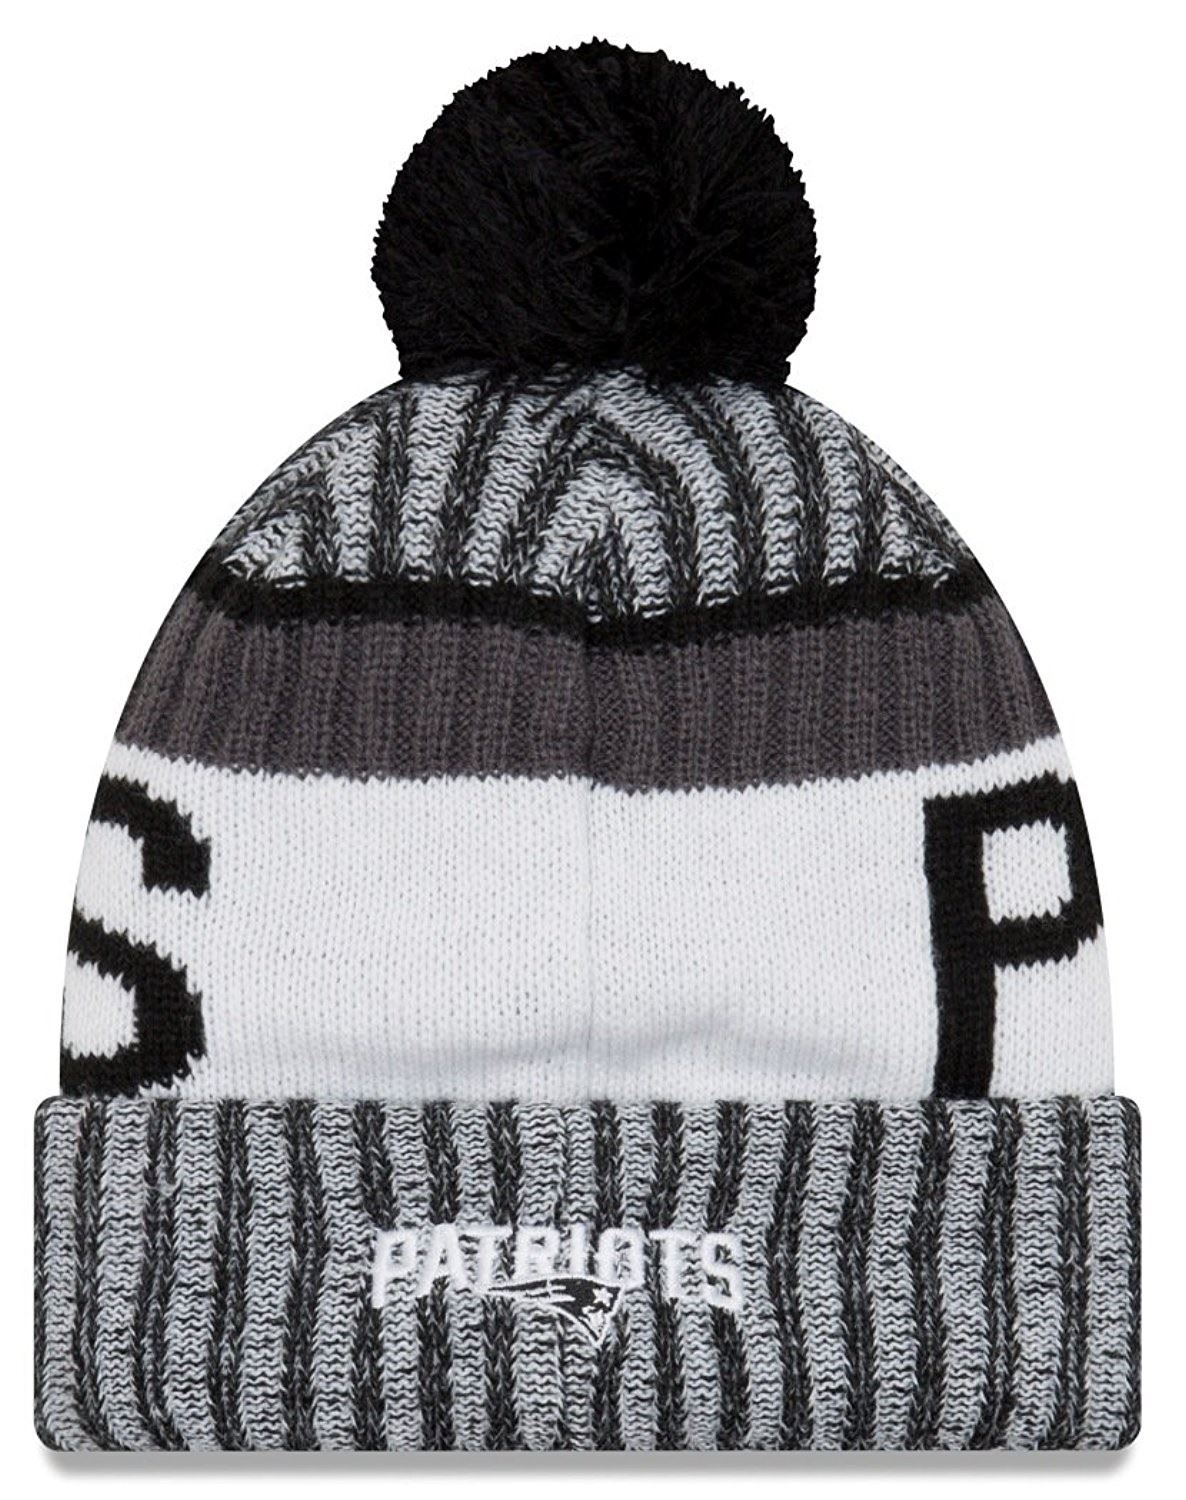 New England Patriots NFL 17 Sport Knit Cuff Beanie New Era